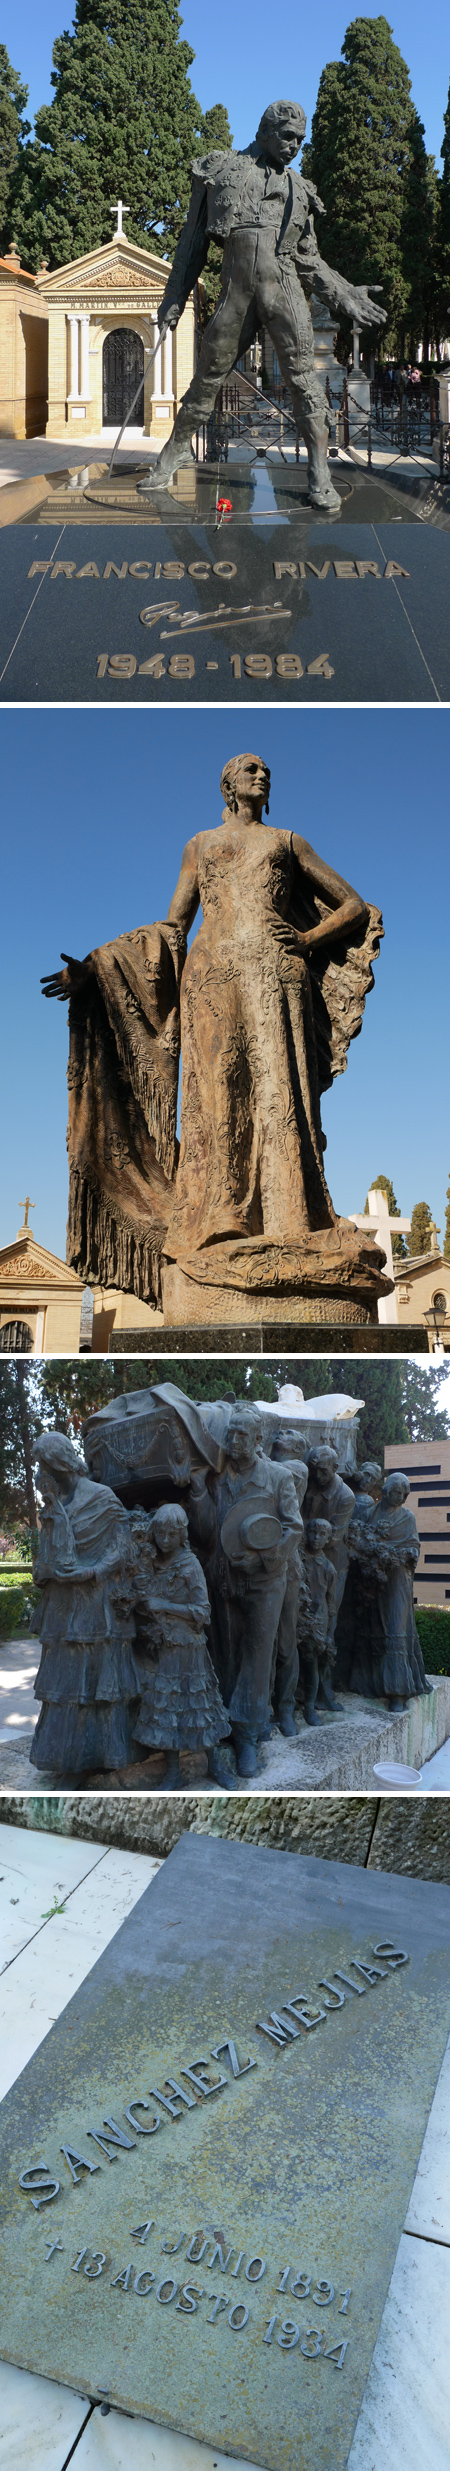 España, Spain, Andalucía, Sevilla, cemetery, cementerio, San Fernando